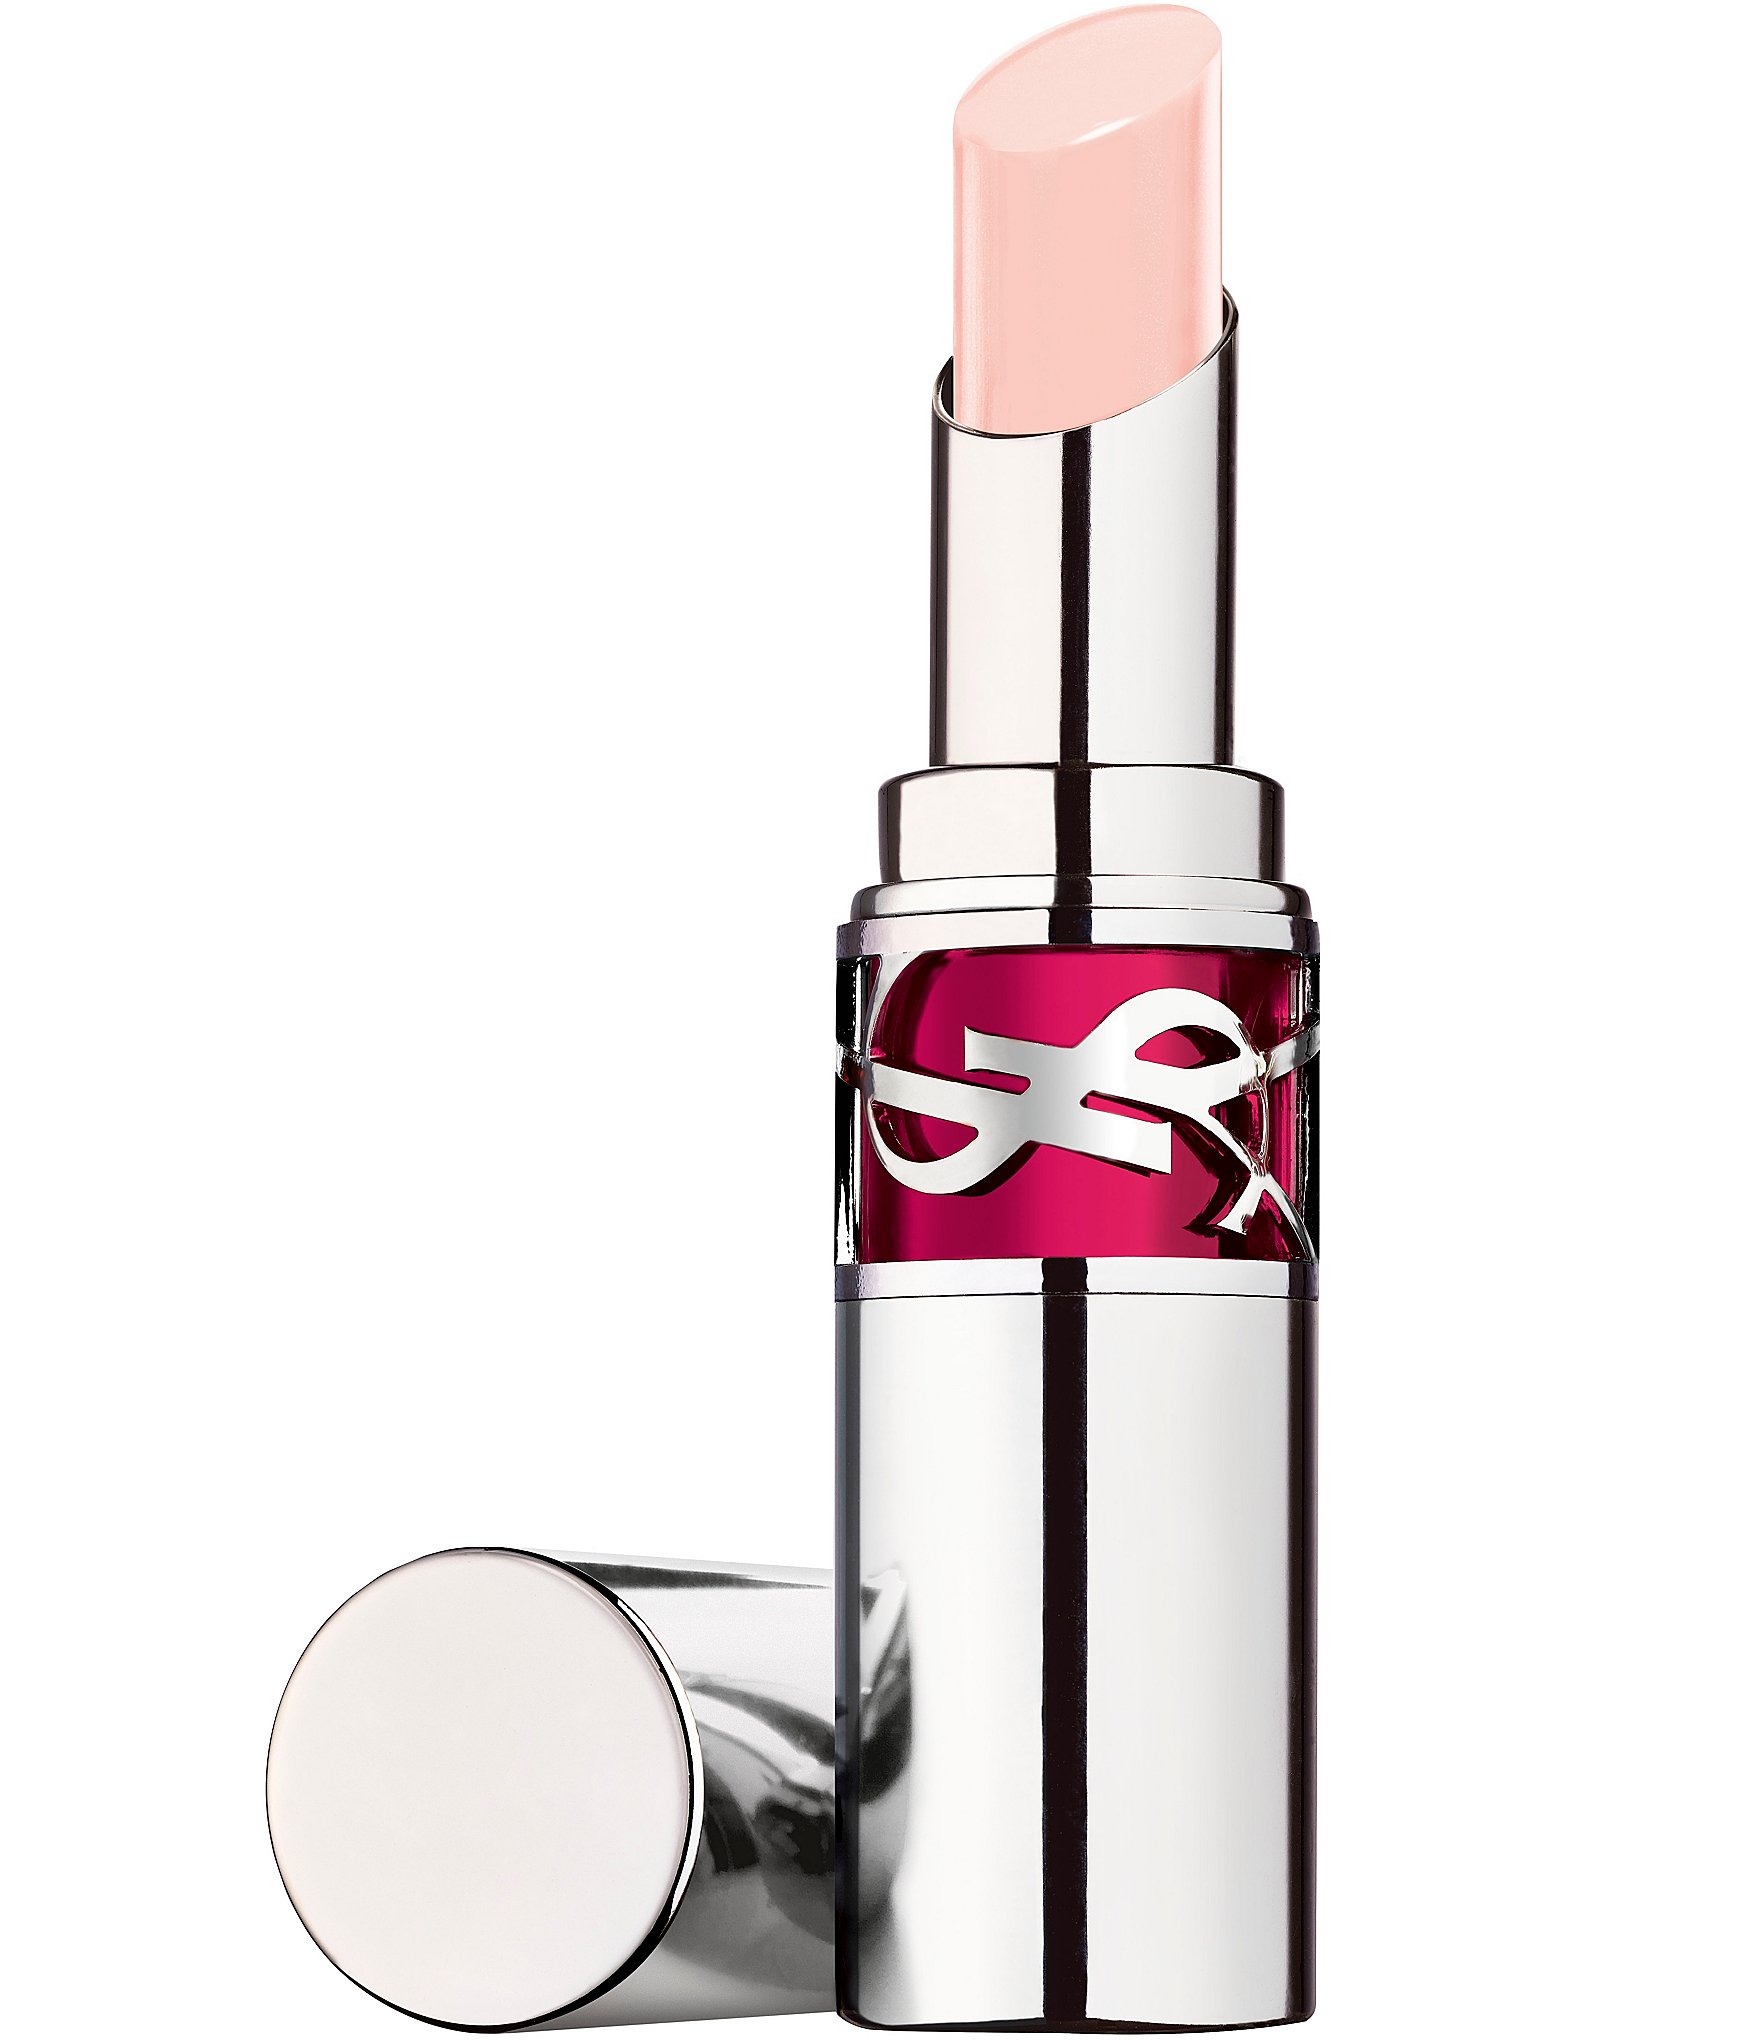 YSL Beauty Rouge Volupté Candy Glaze Lip Gloss Stick Review